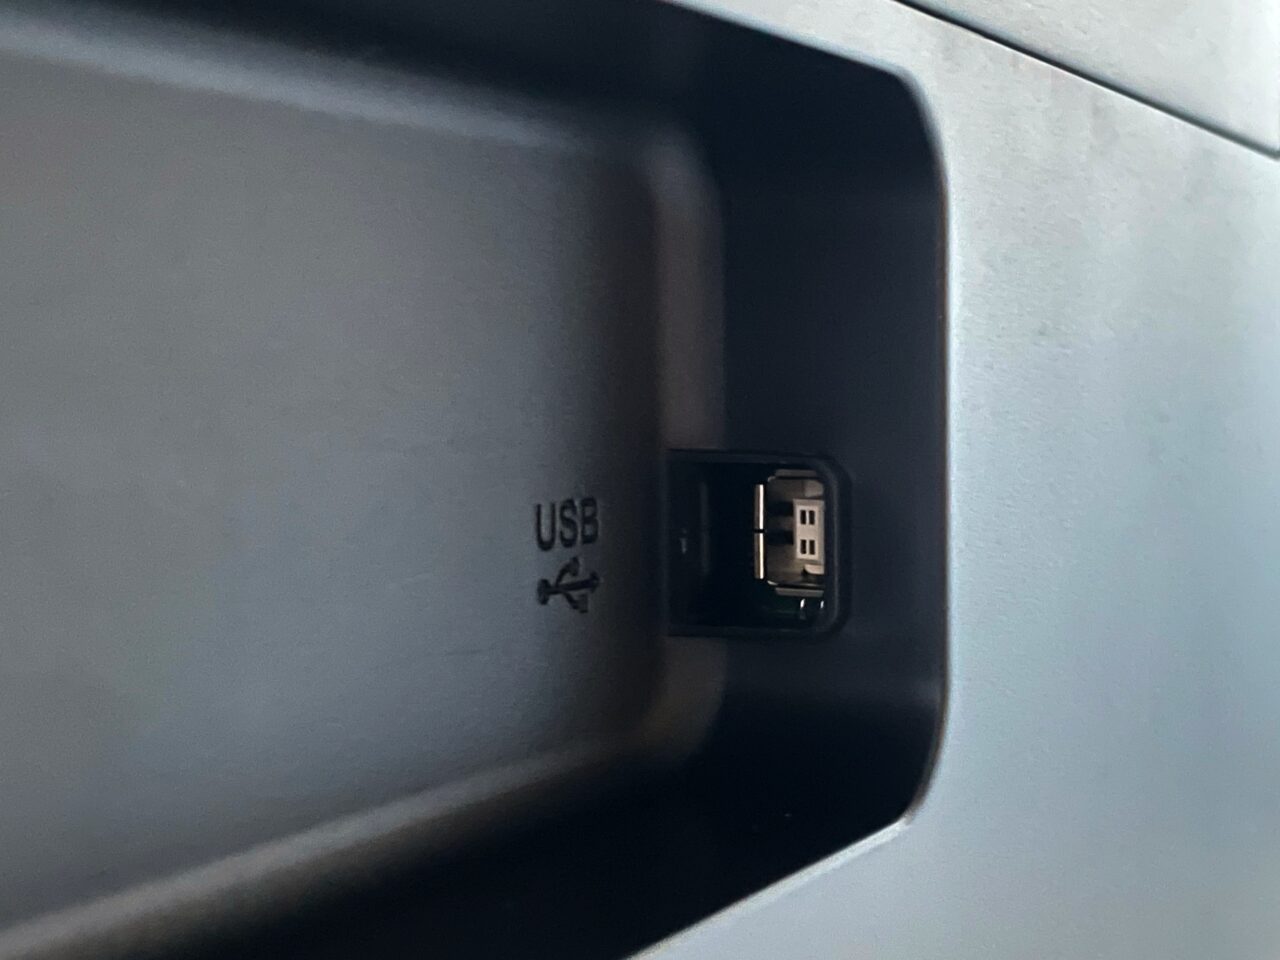 recenzja epson ecotank l3251. Port USB umieszczony w ciemnym zagłębieniu na szarym tle.